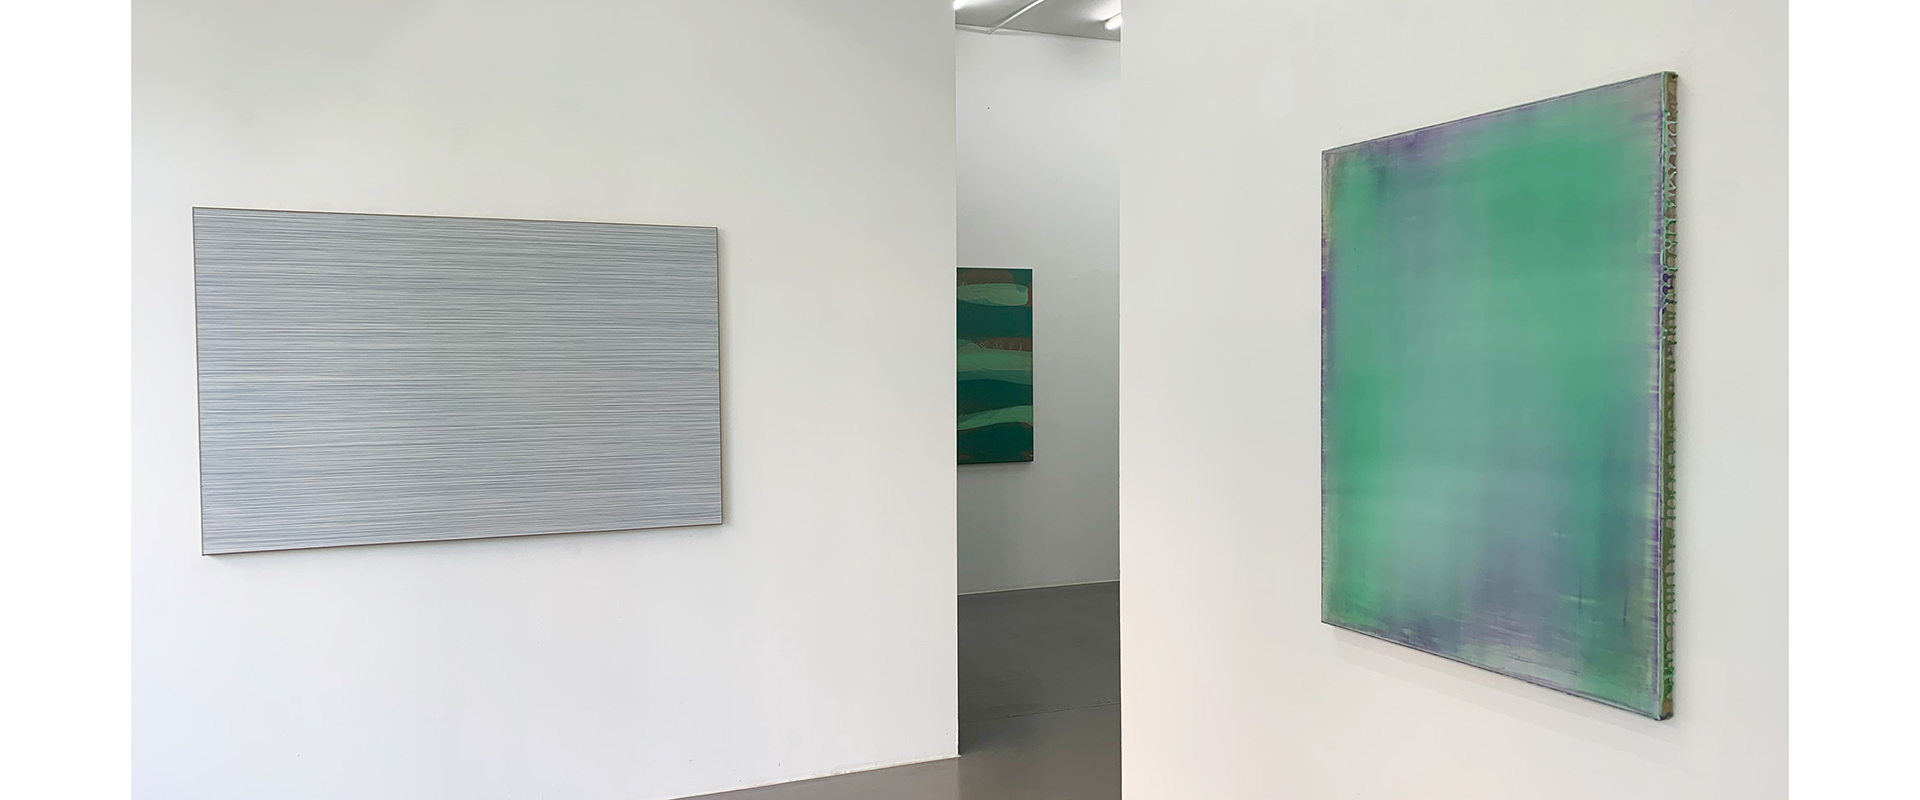 Ausstellungsansicht "Zwei Europäische Positionen Minimalistischer Malerei -- Jus Juchtmans / Lars Strandh", Galerie Renate Bender 2022